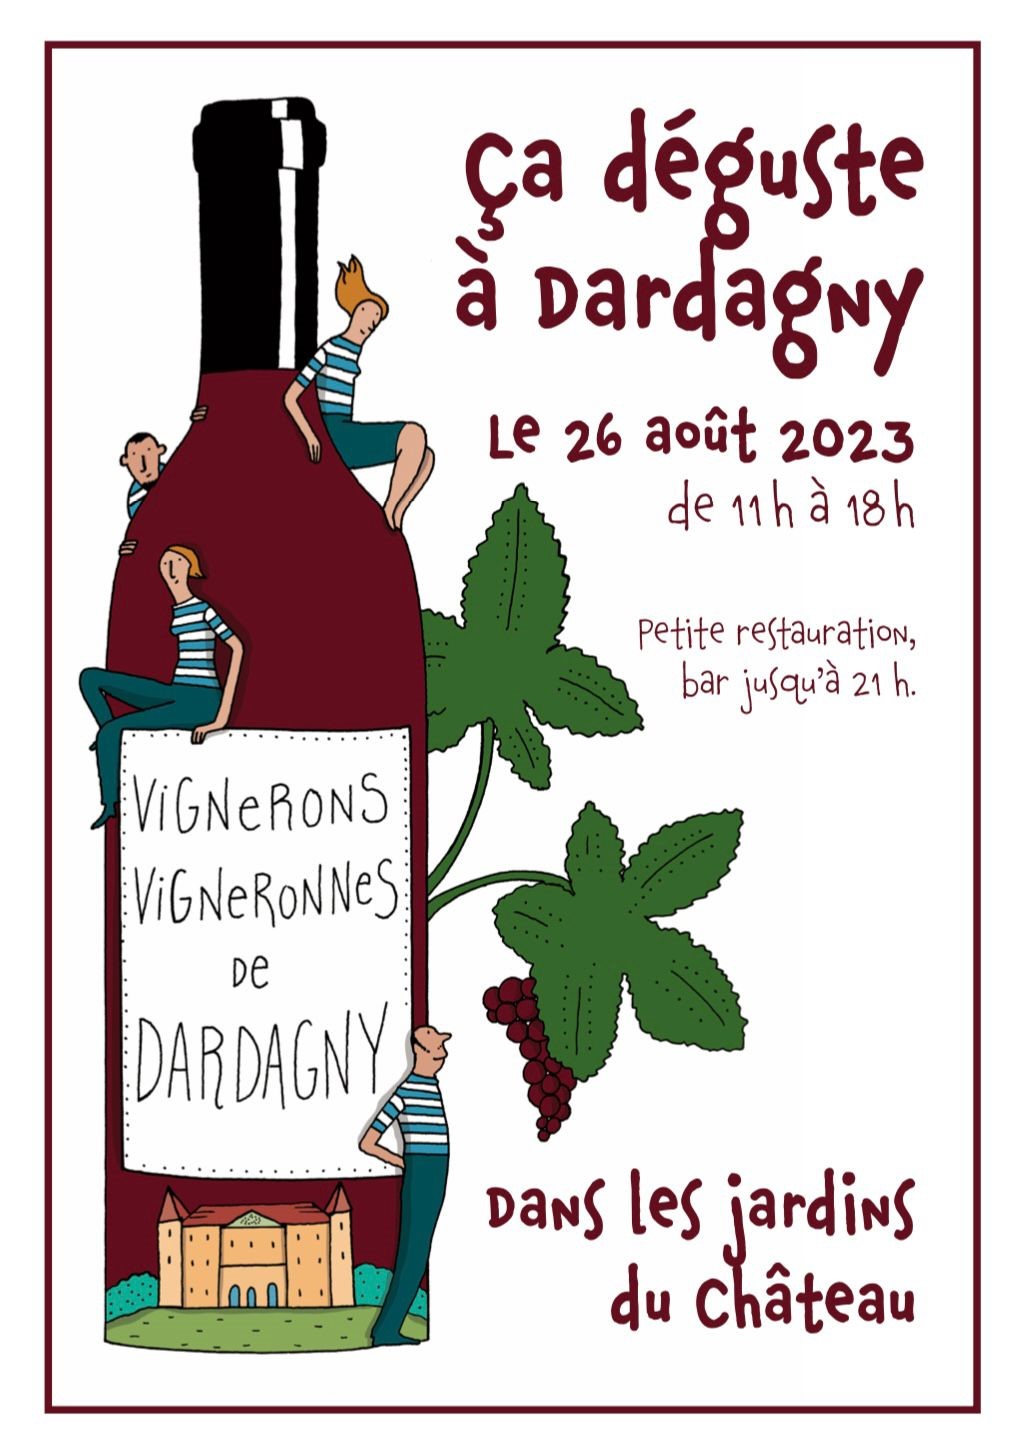 Dardagny deguste   aout 2023 au Chateau